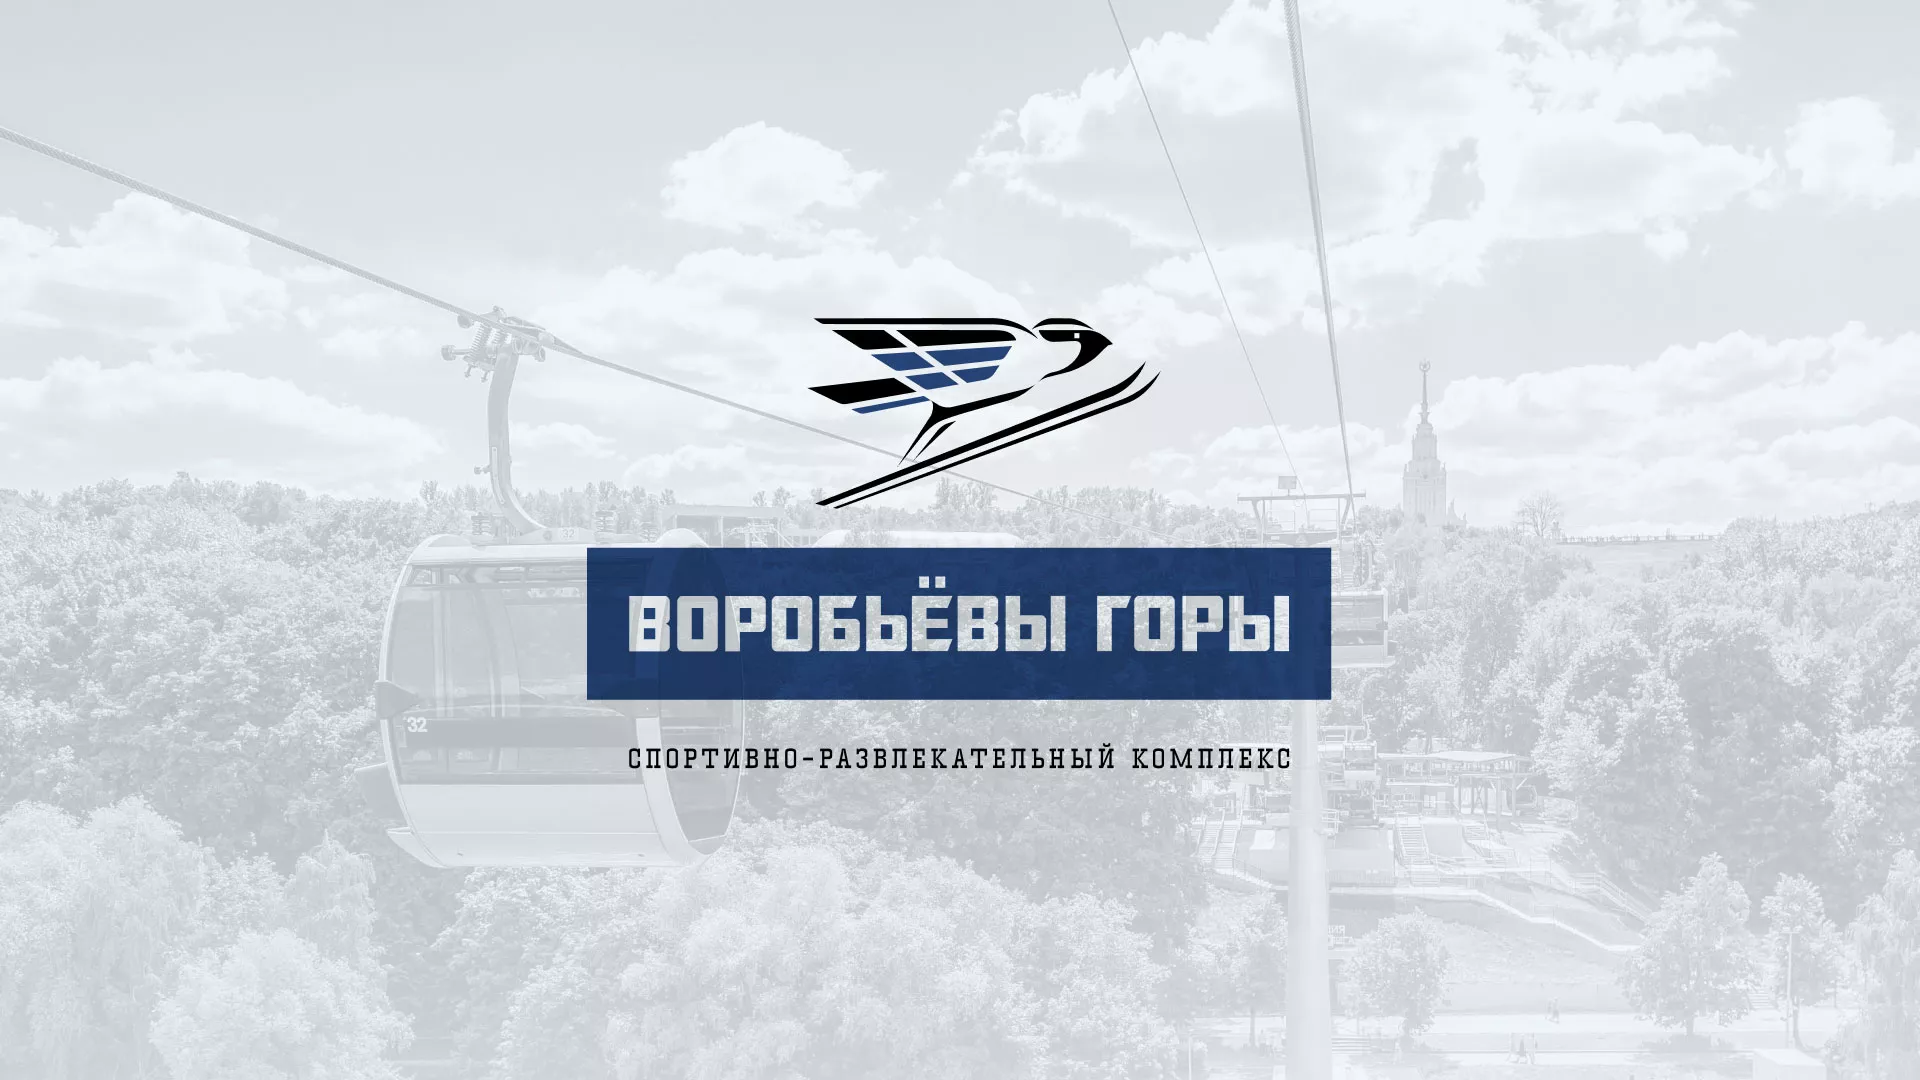 Разработка сайта в Харовске для спортивно-развлекательного комплекса «Воробьёвы горы»